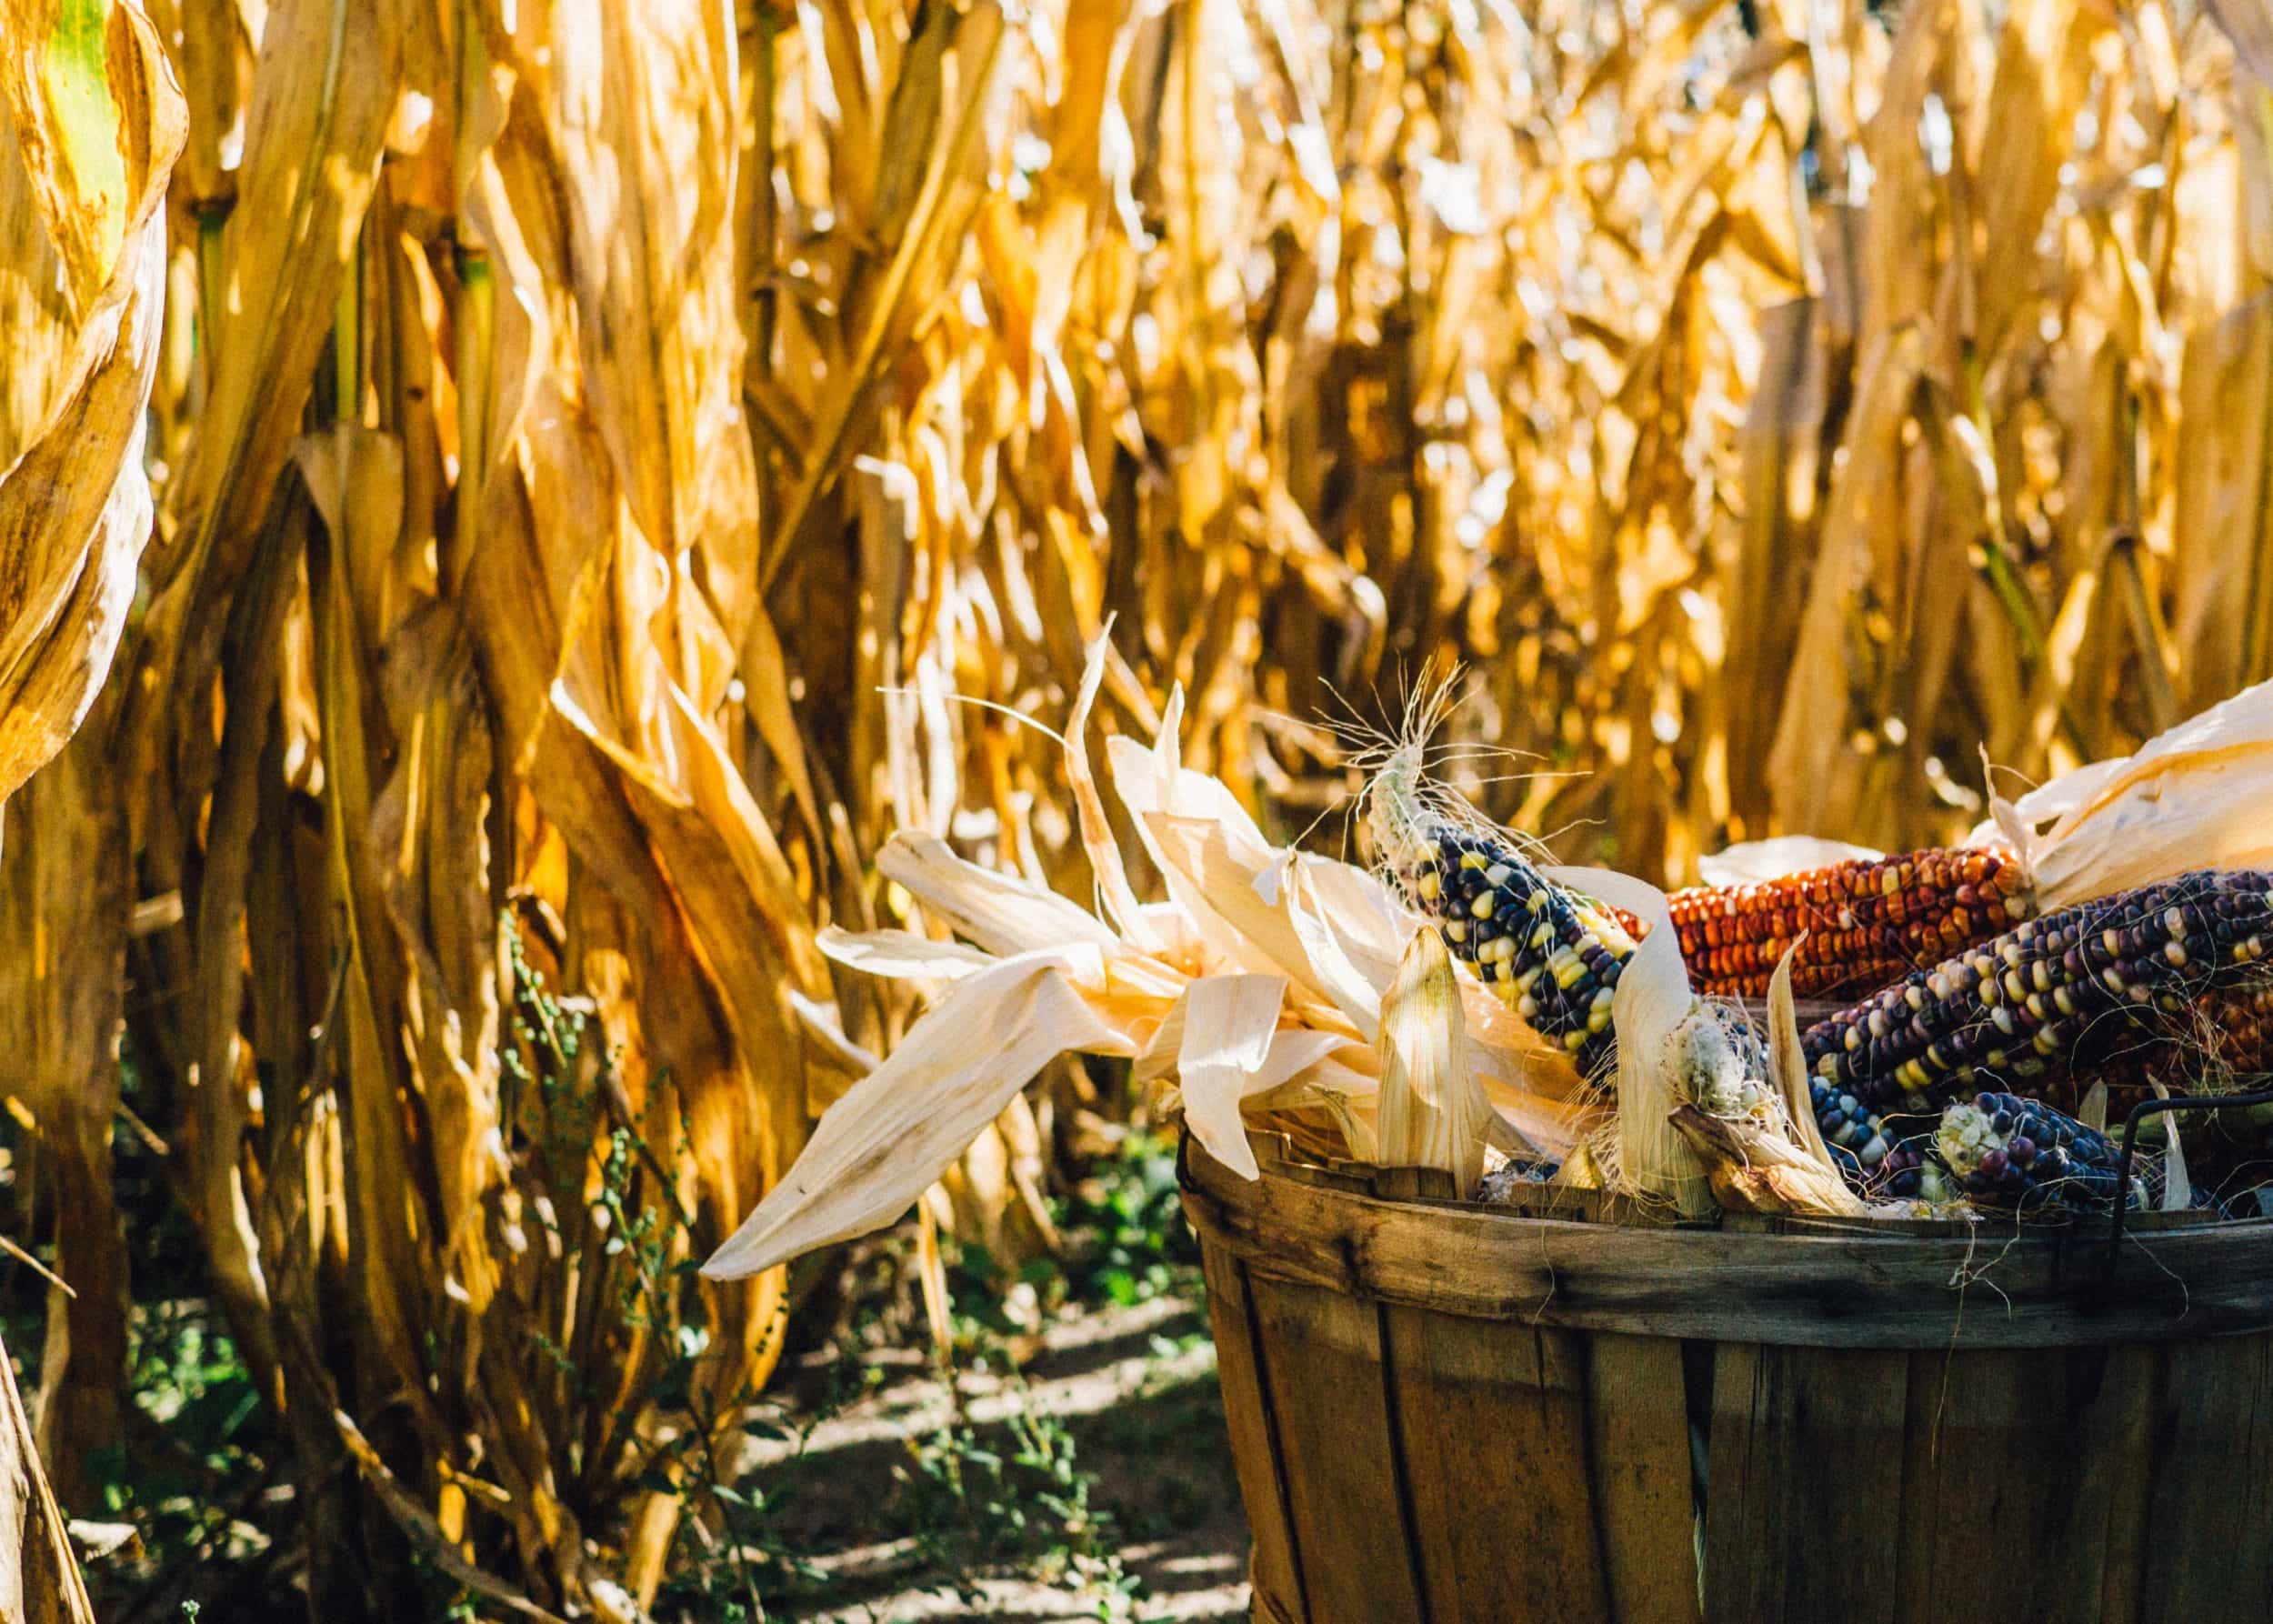 Indian corn in crate near corn field in autumn